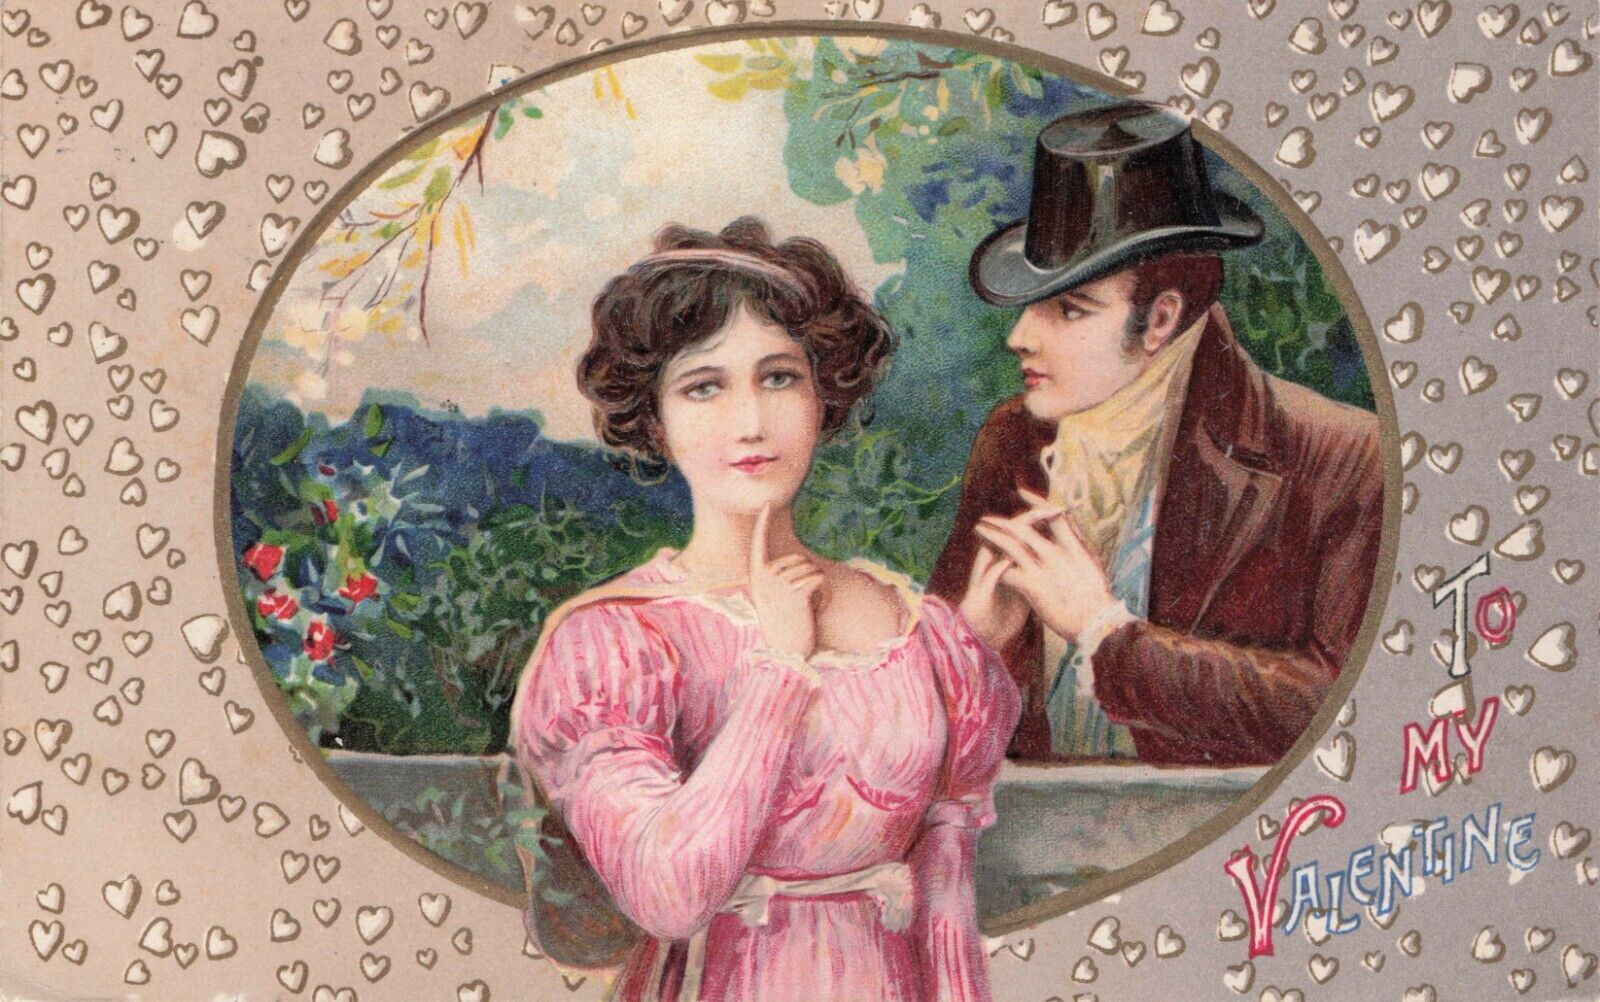 Artist Card Valentine Secret Lovers Meet at Fence  Winsch Back Vintage Postcard